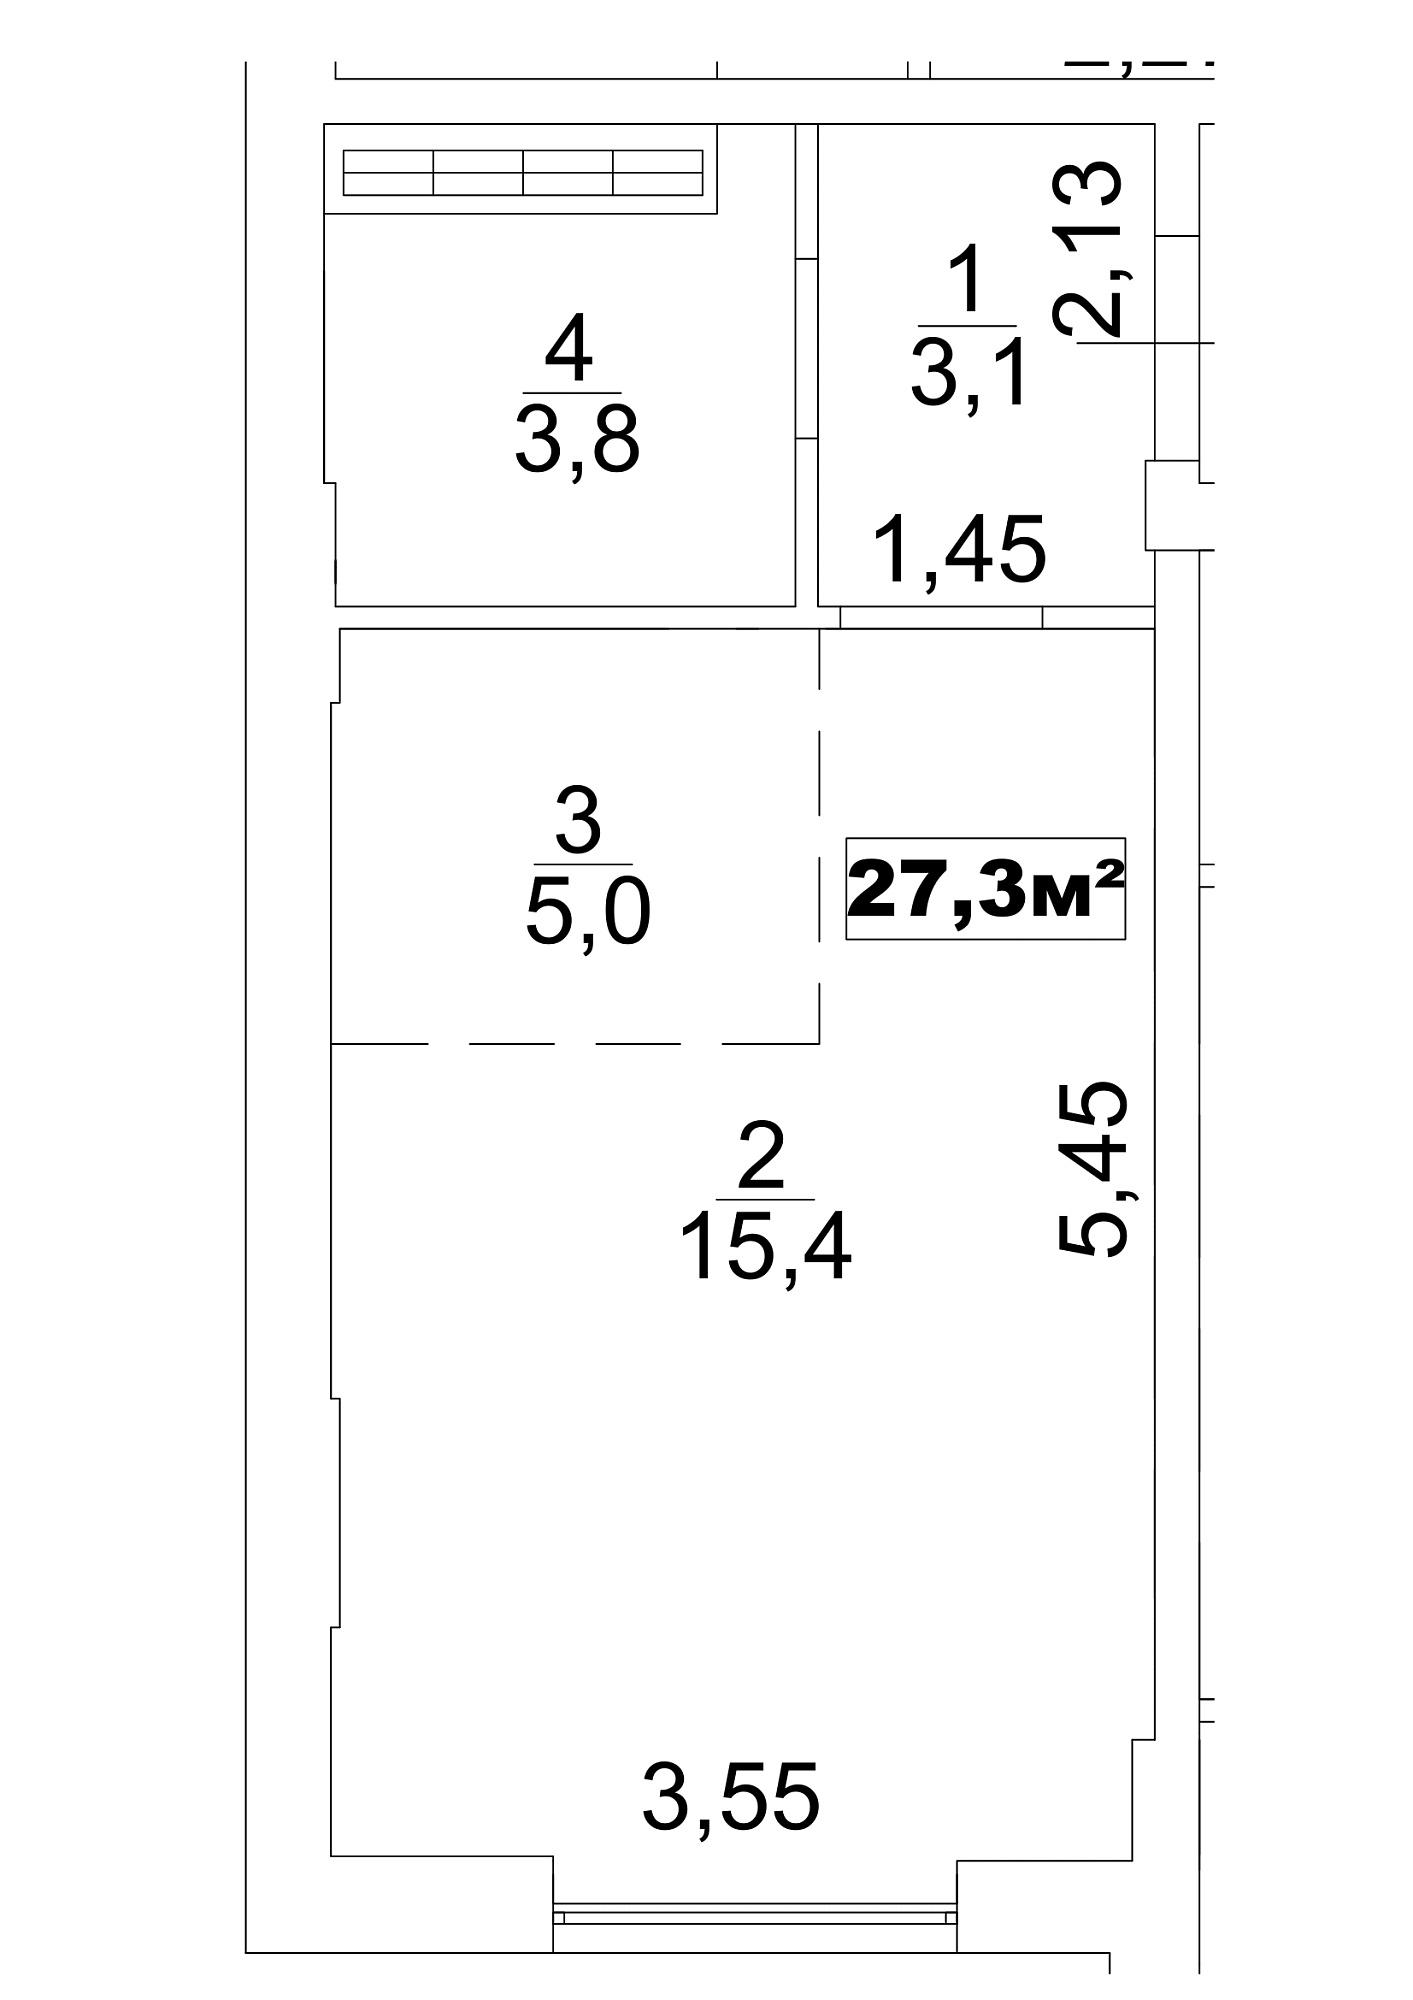 Планування Smart-квартира площею 27.3м2, AB-13-10/0081а.